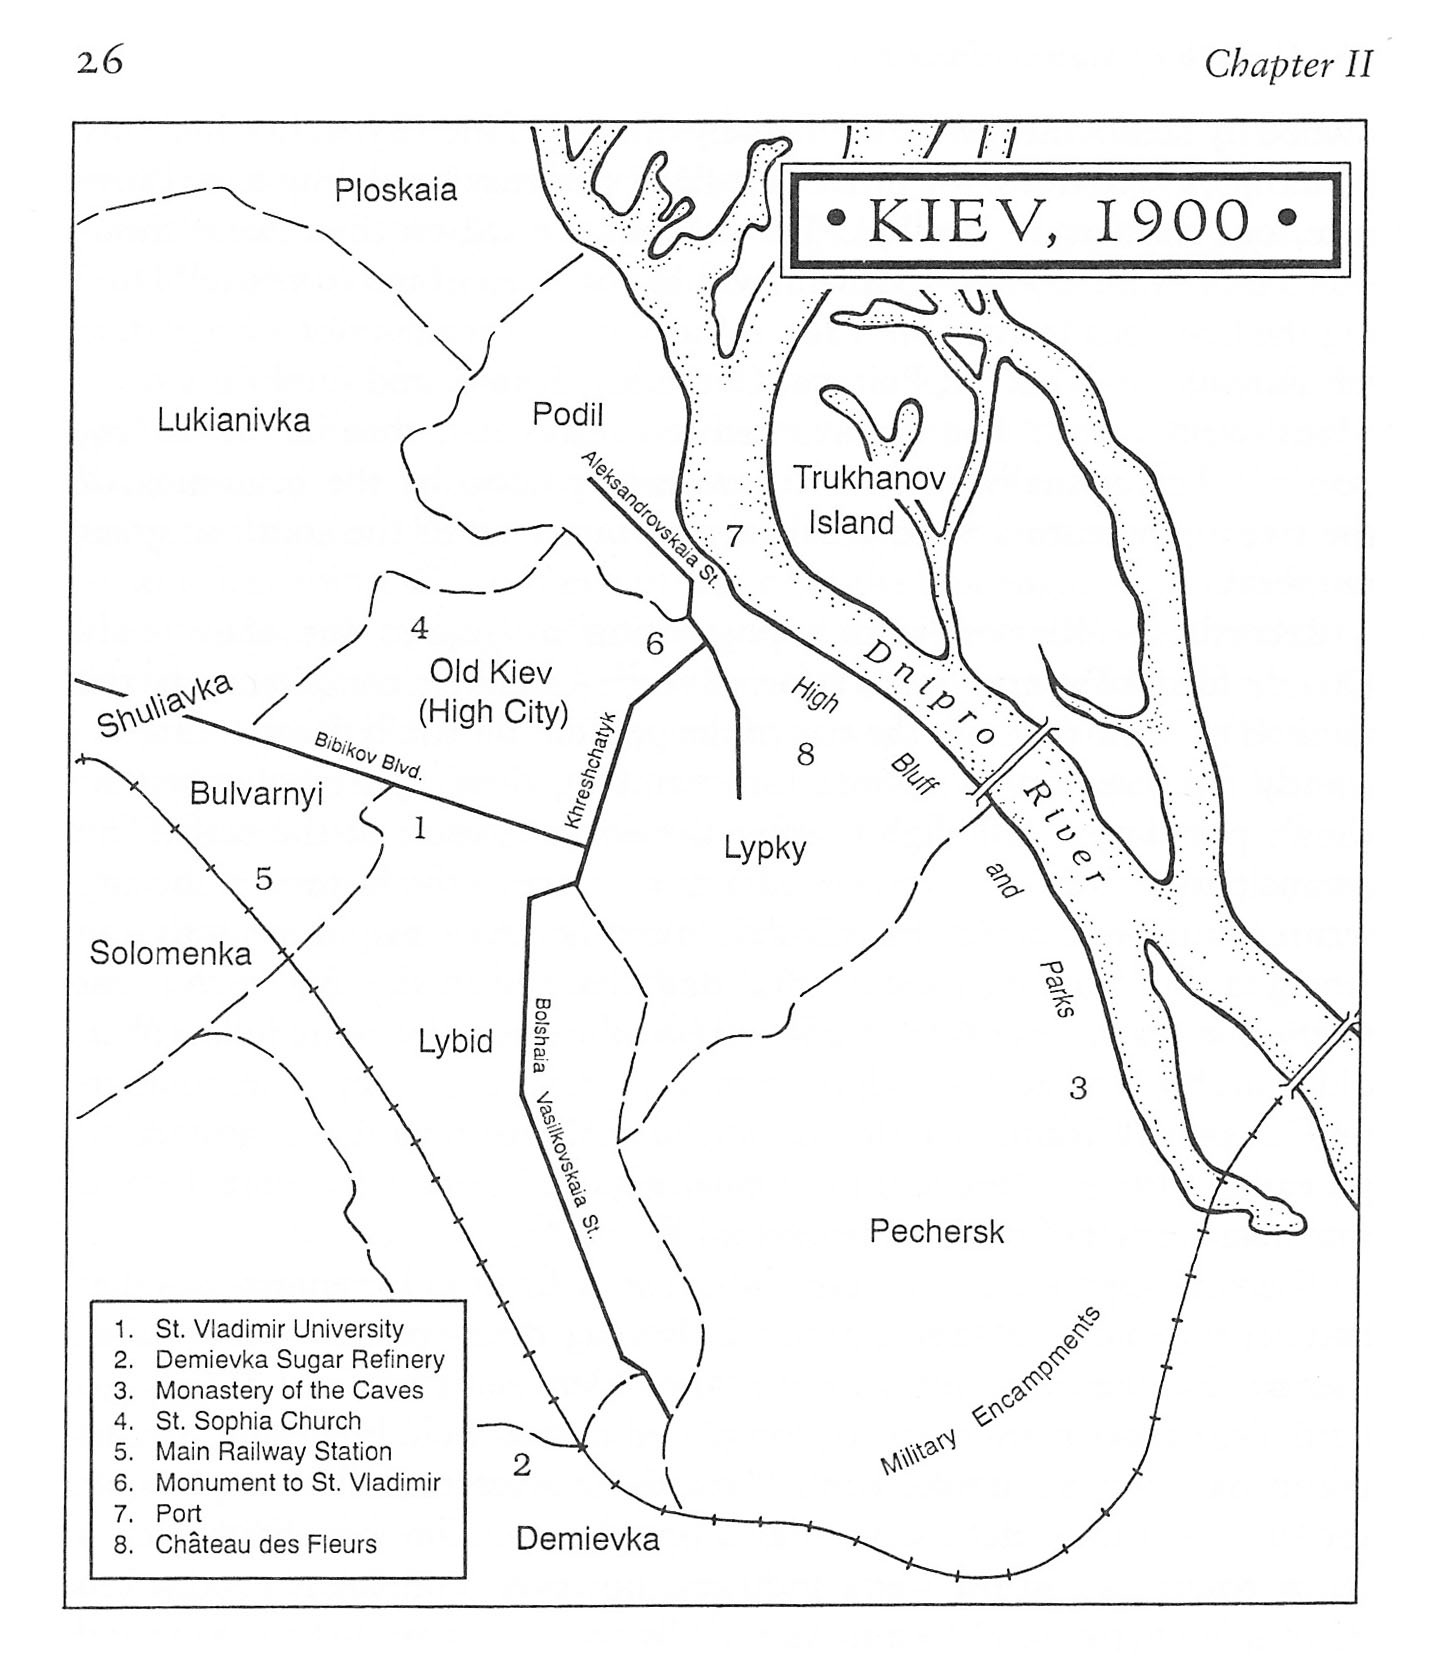 1900 Kiev Map